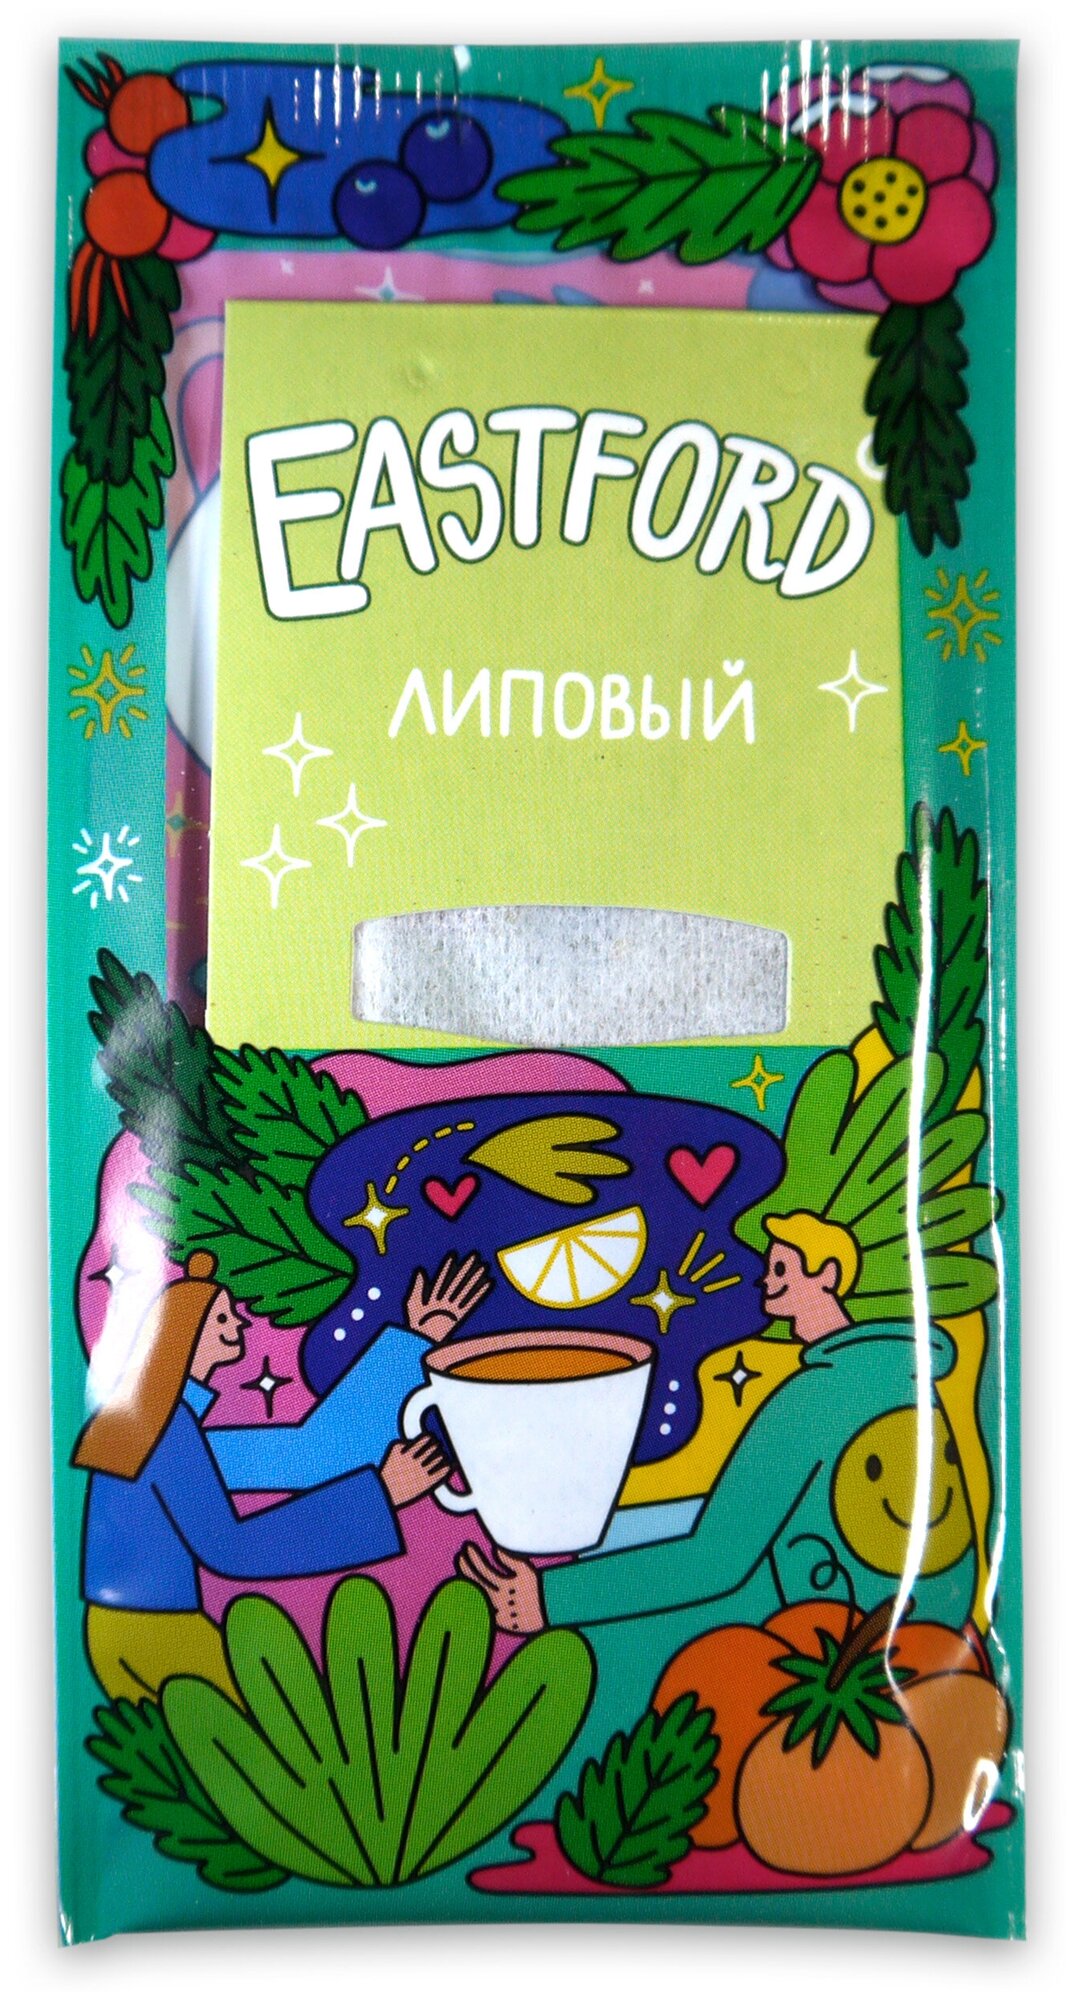 Чай EASTFORD подарочный набор в больших фильтр-пакетах чайная коллекция вкусов - фотография № 3